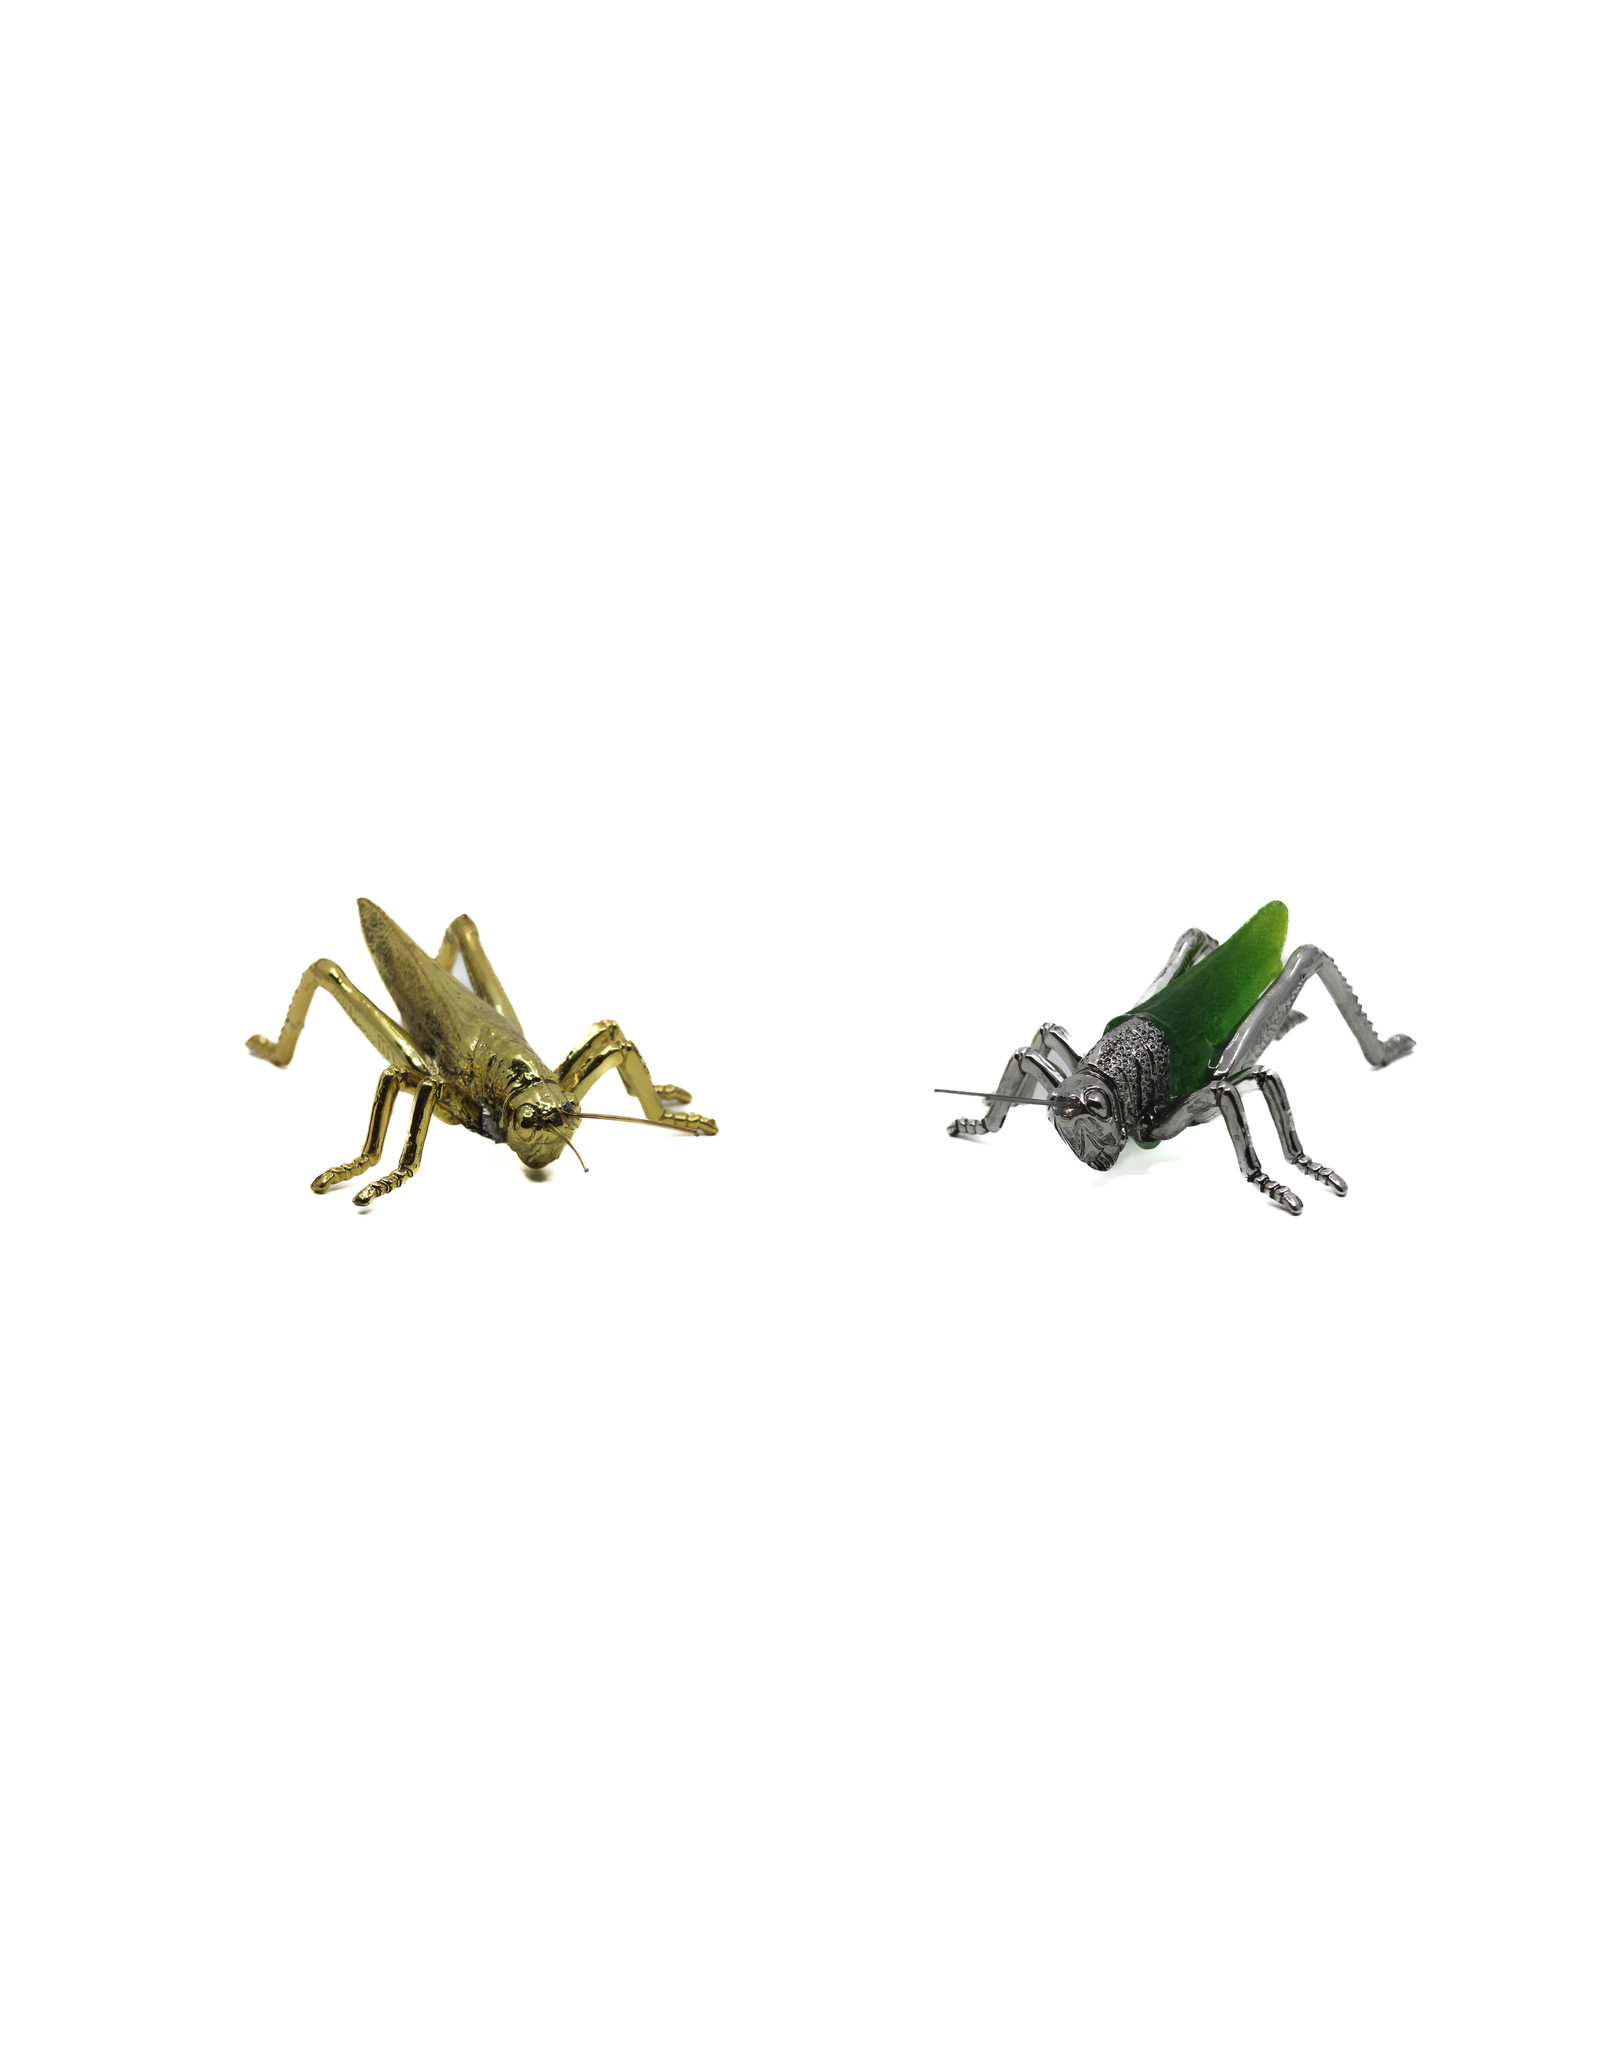 Zodax Grasshopper